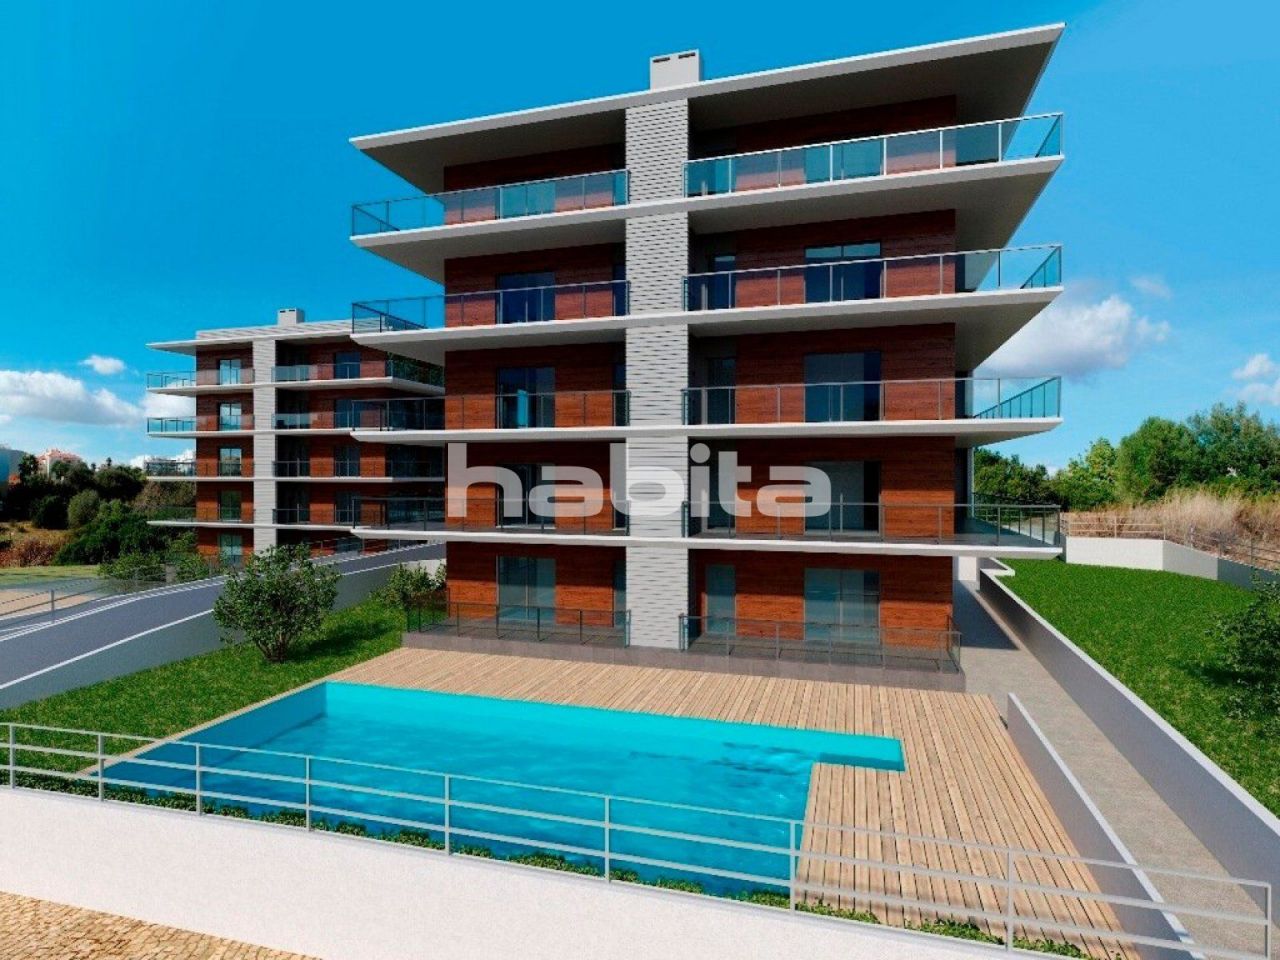 Apartment in Portimao, Portugal, 69.75 sq.m - picture 1